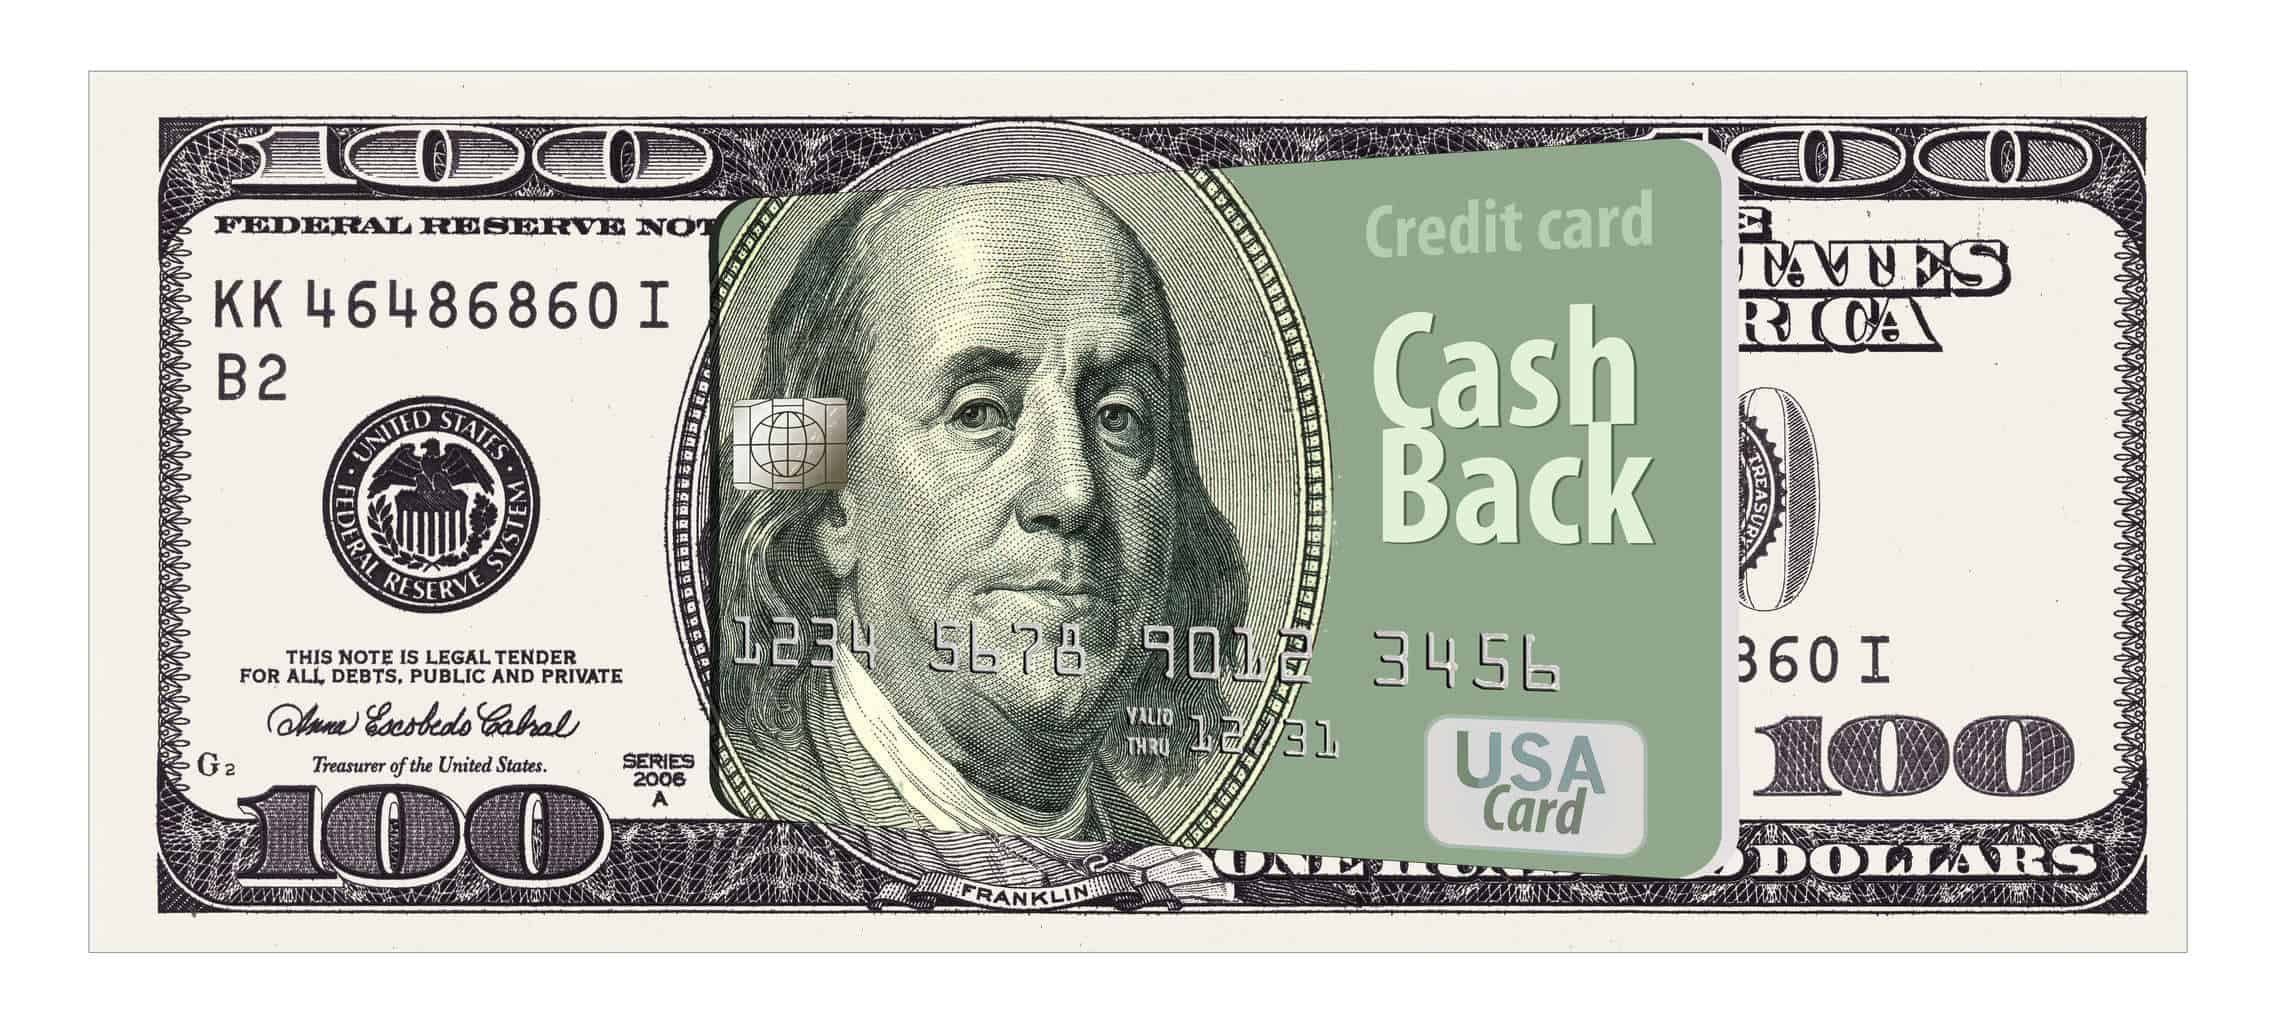 Cash Back Credit Card